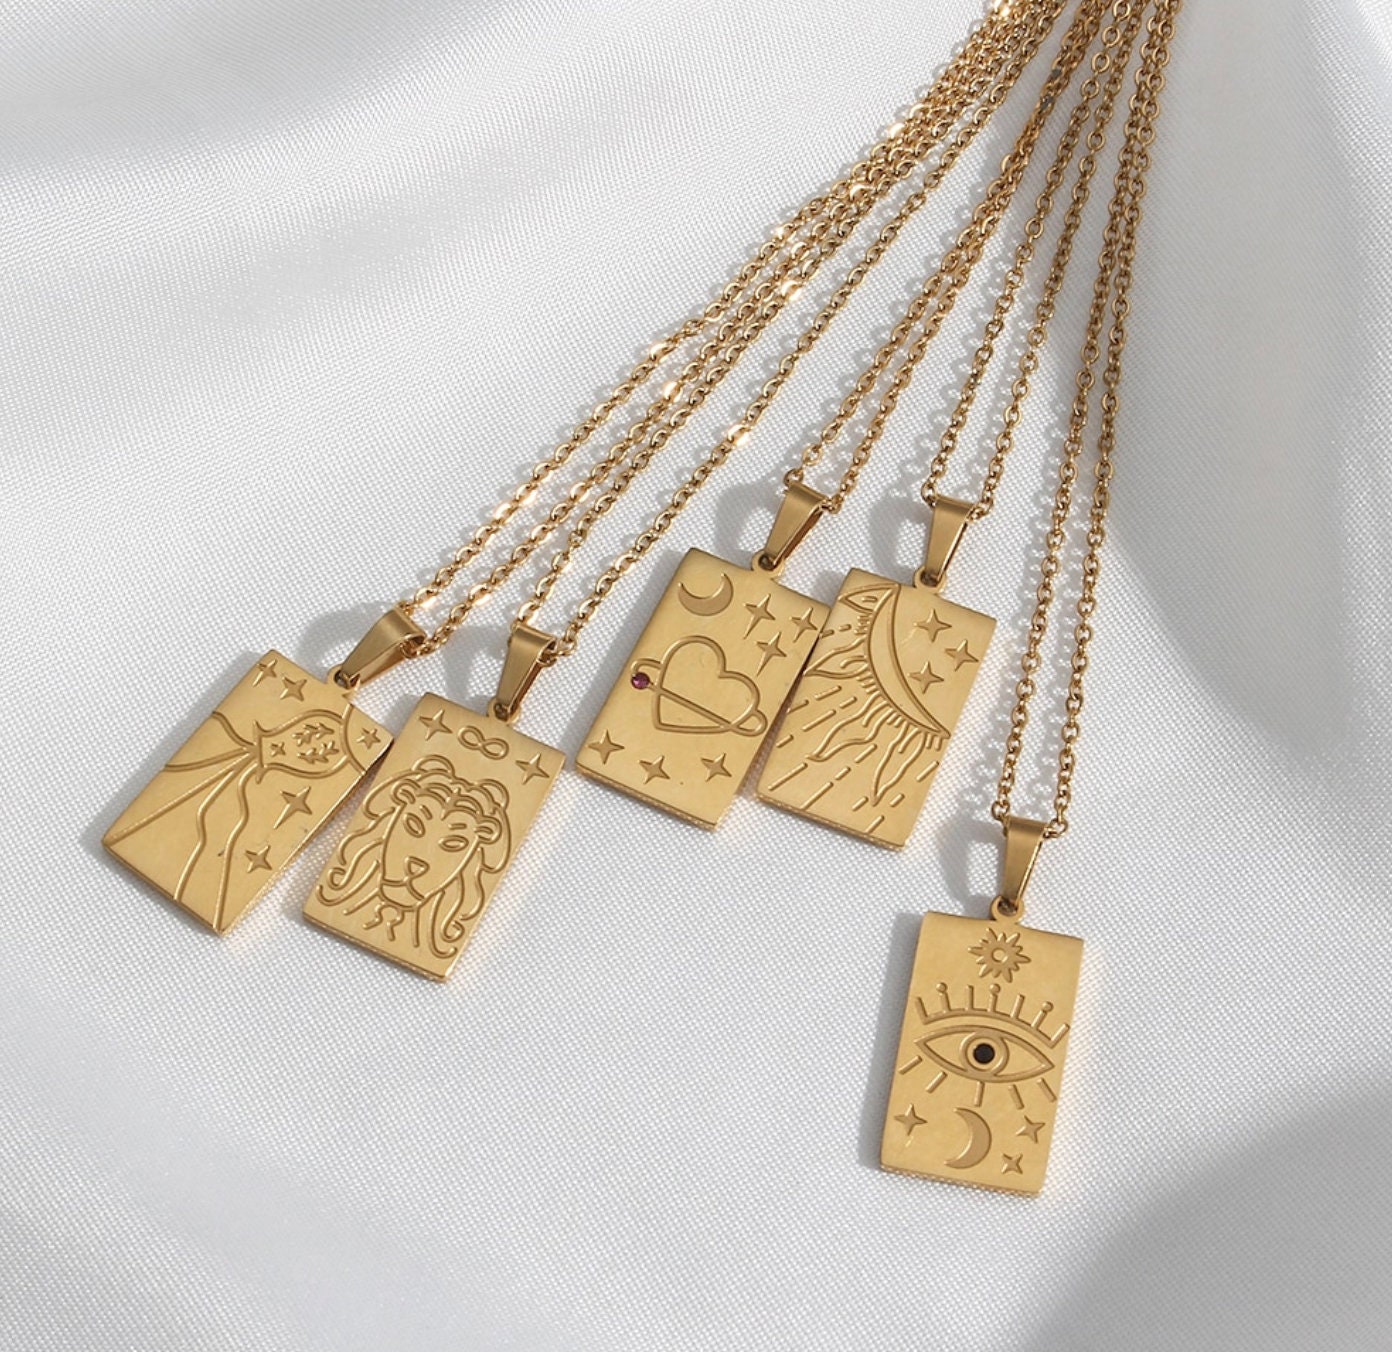 Gold Tarot Card Necklace | Evil eye jewelry, Eye jewelry, Themed jewelry